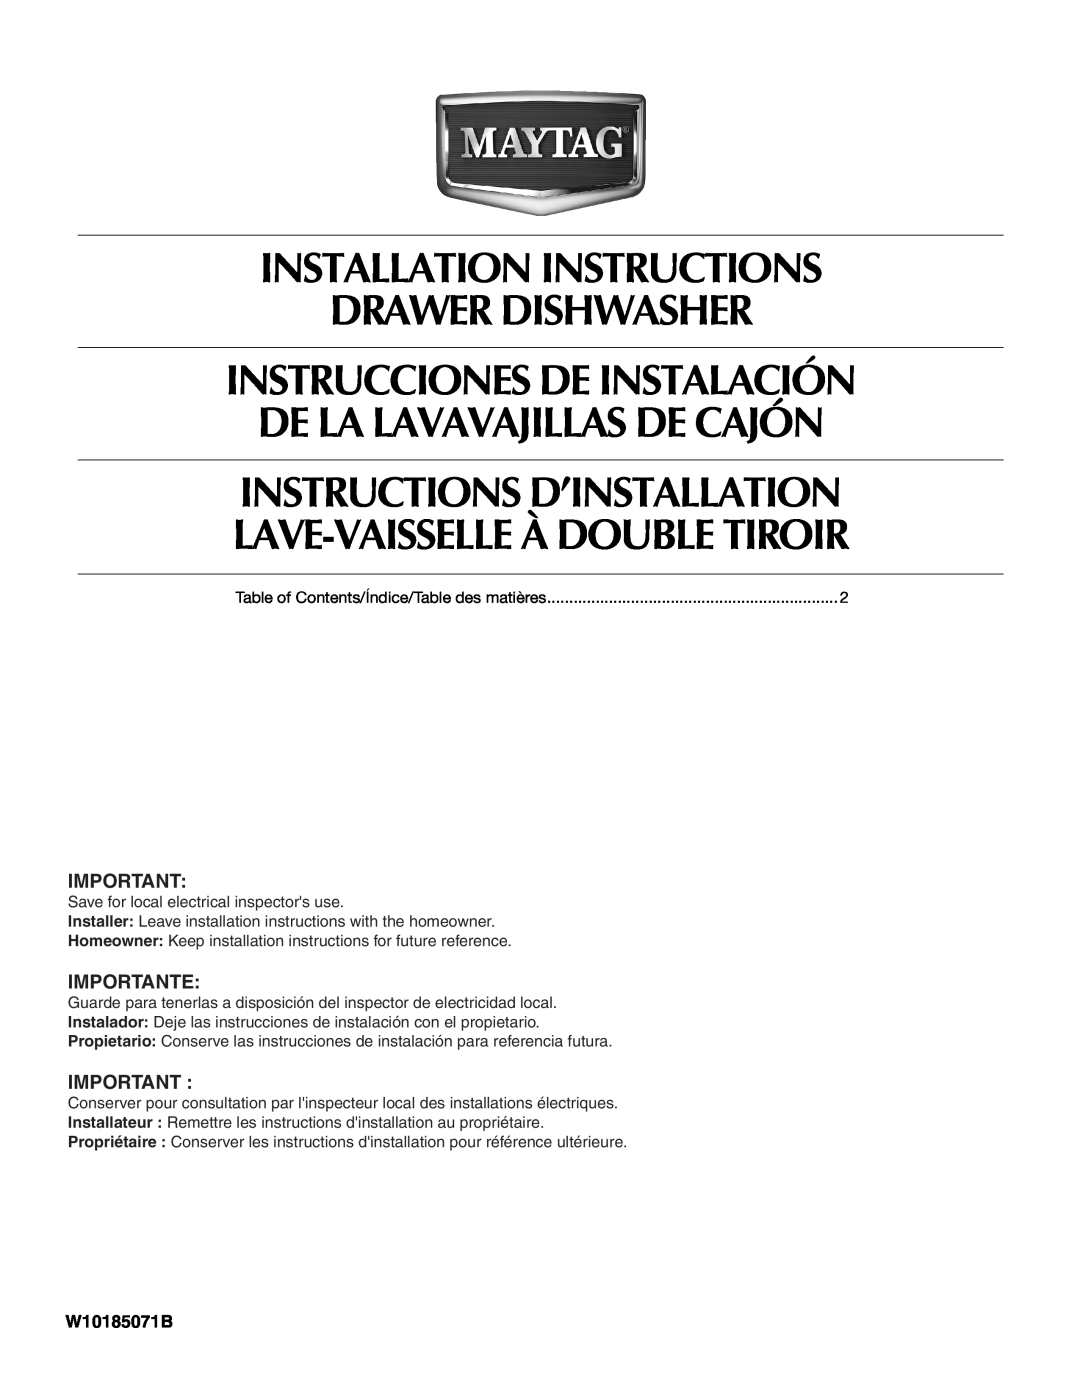 Maytag W10185071B installation instructions Installation Instructions Drawer Dishwasher, Instrucciones De Instalación 